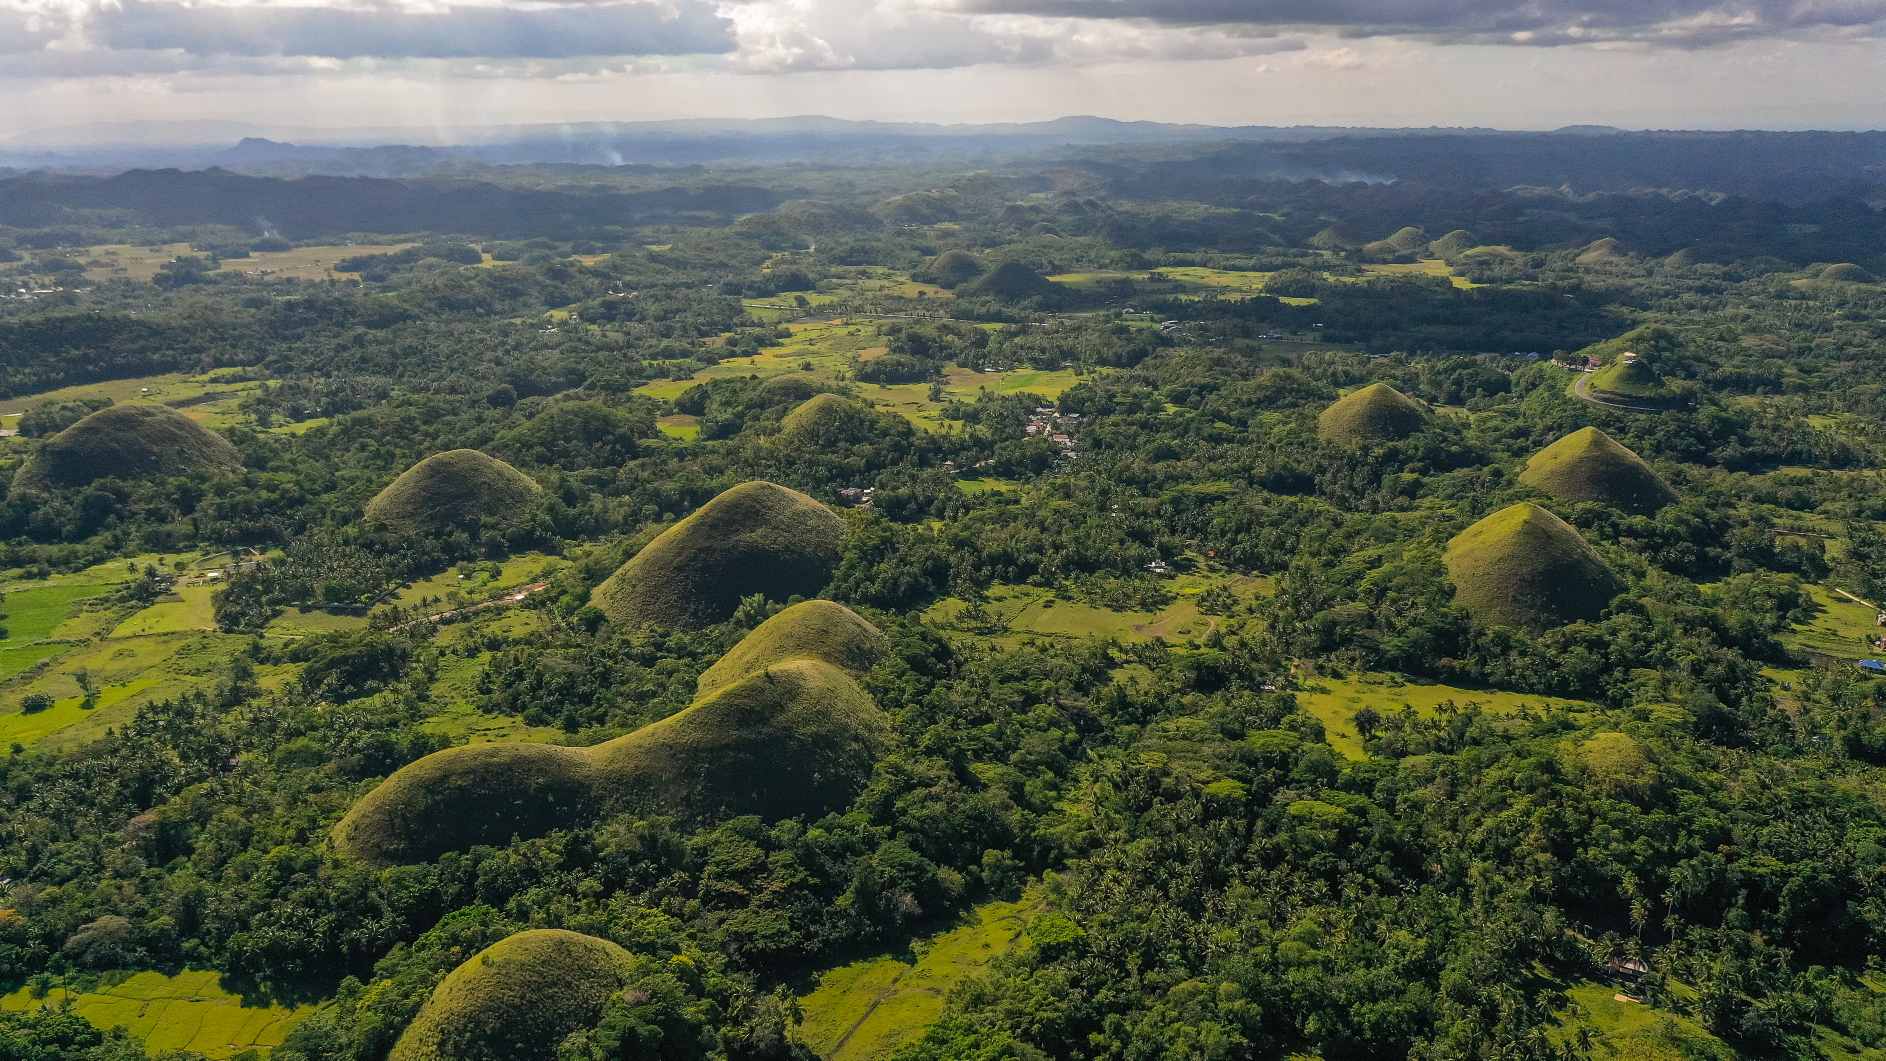 Kalvos tarp dirbamų žemių. Šokolado kalvų gamtos paminklas, Bohol sala, Filipinai. © Vaizdo kreditas: Aleksejus Kornyljevas | Licencijuota iš DreamsTime, ID: 223476330